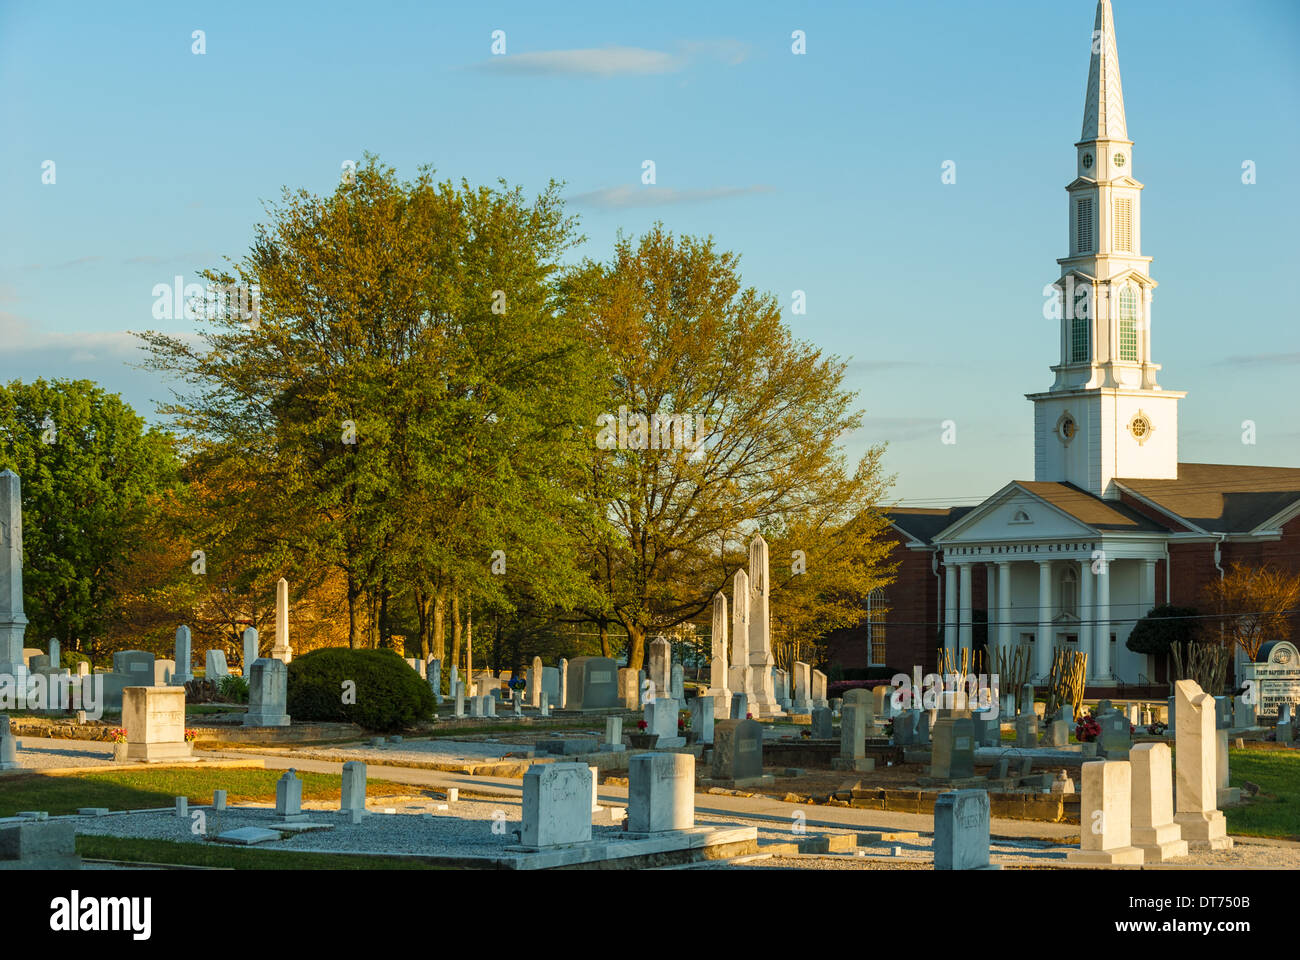 Un soleil couchant met en valeur les marqueurs et les monolithes du cimetière historique de Snellville et de la première église baptiste à Snellville, en Géorgie. (ÉTATS-UNIS) Banque D'Images